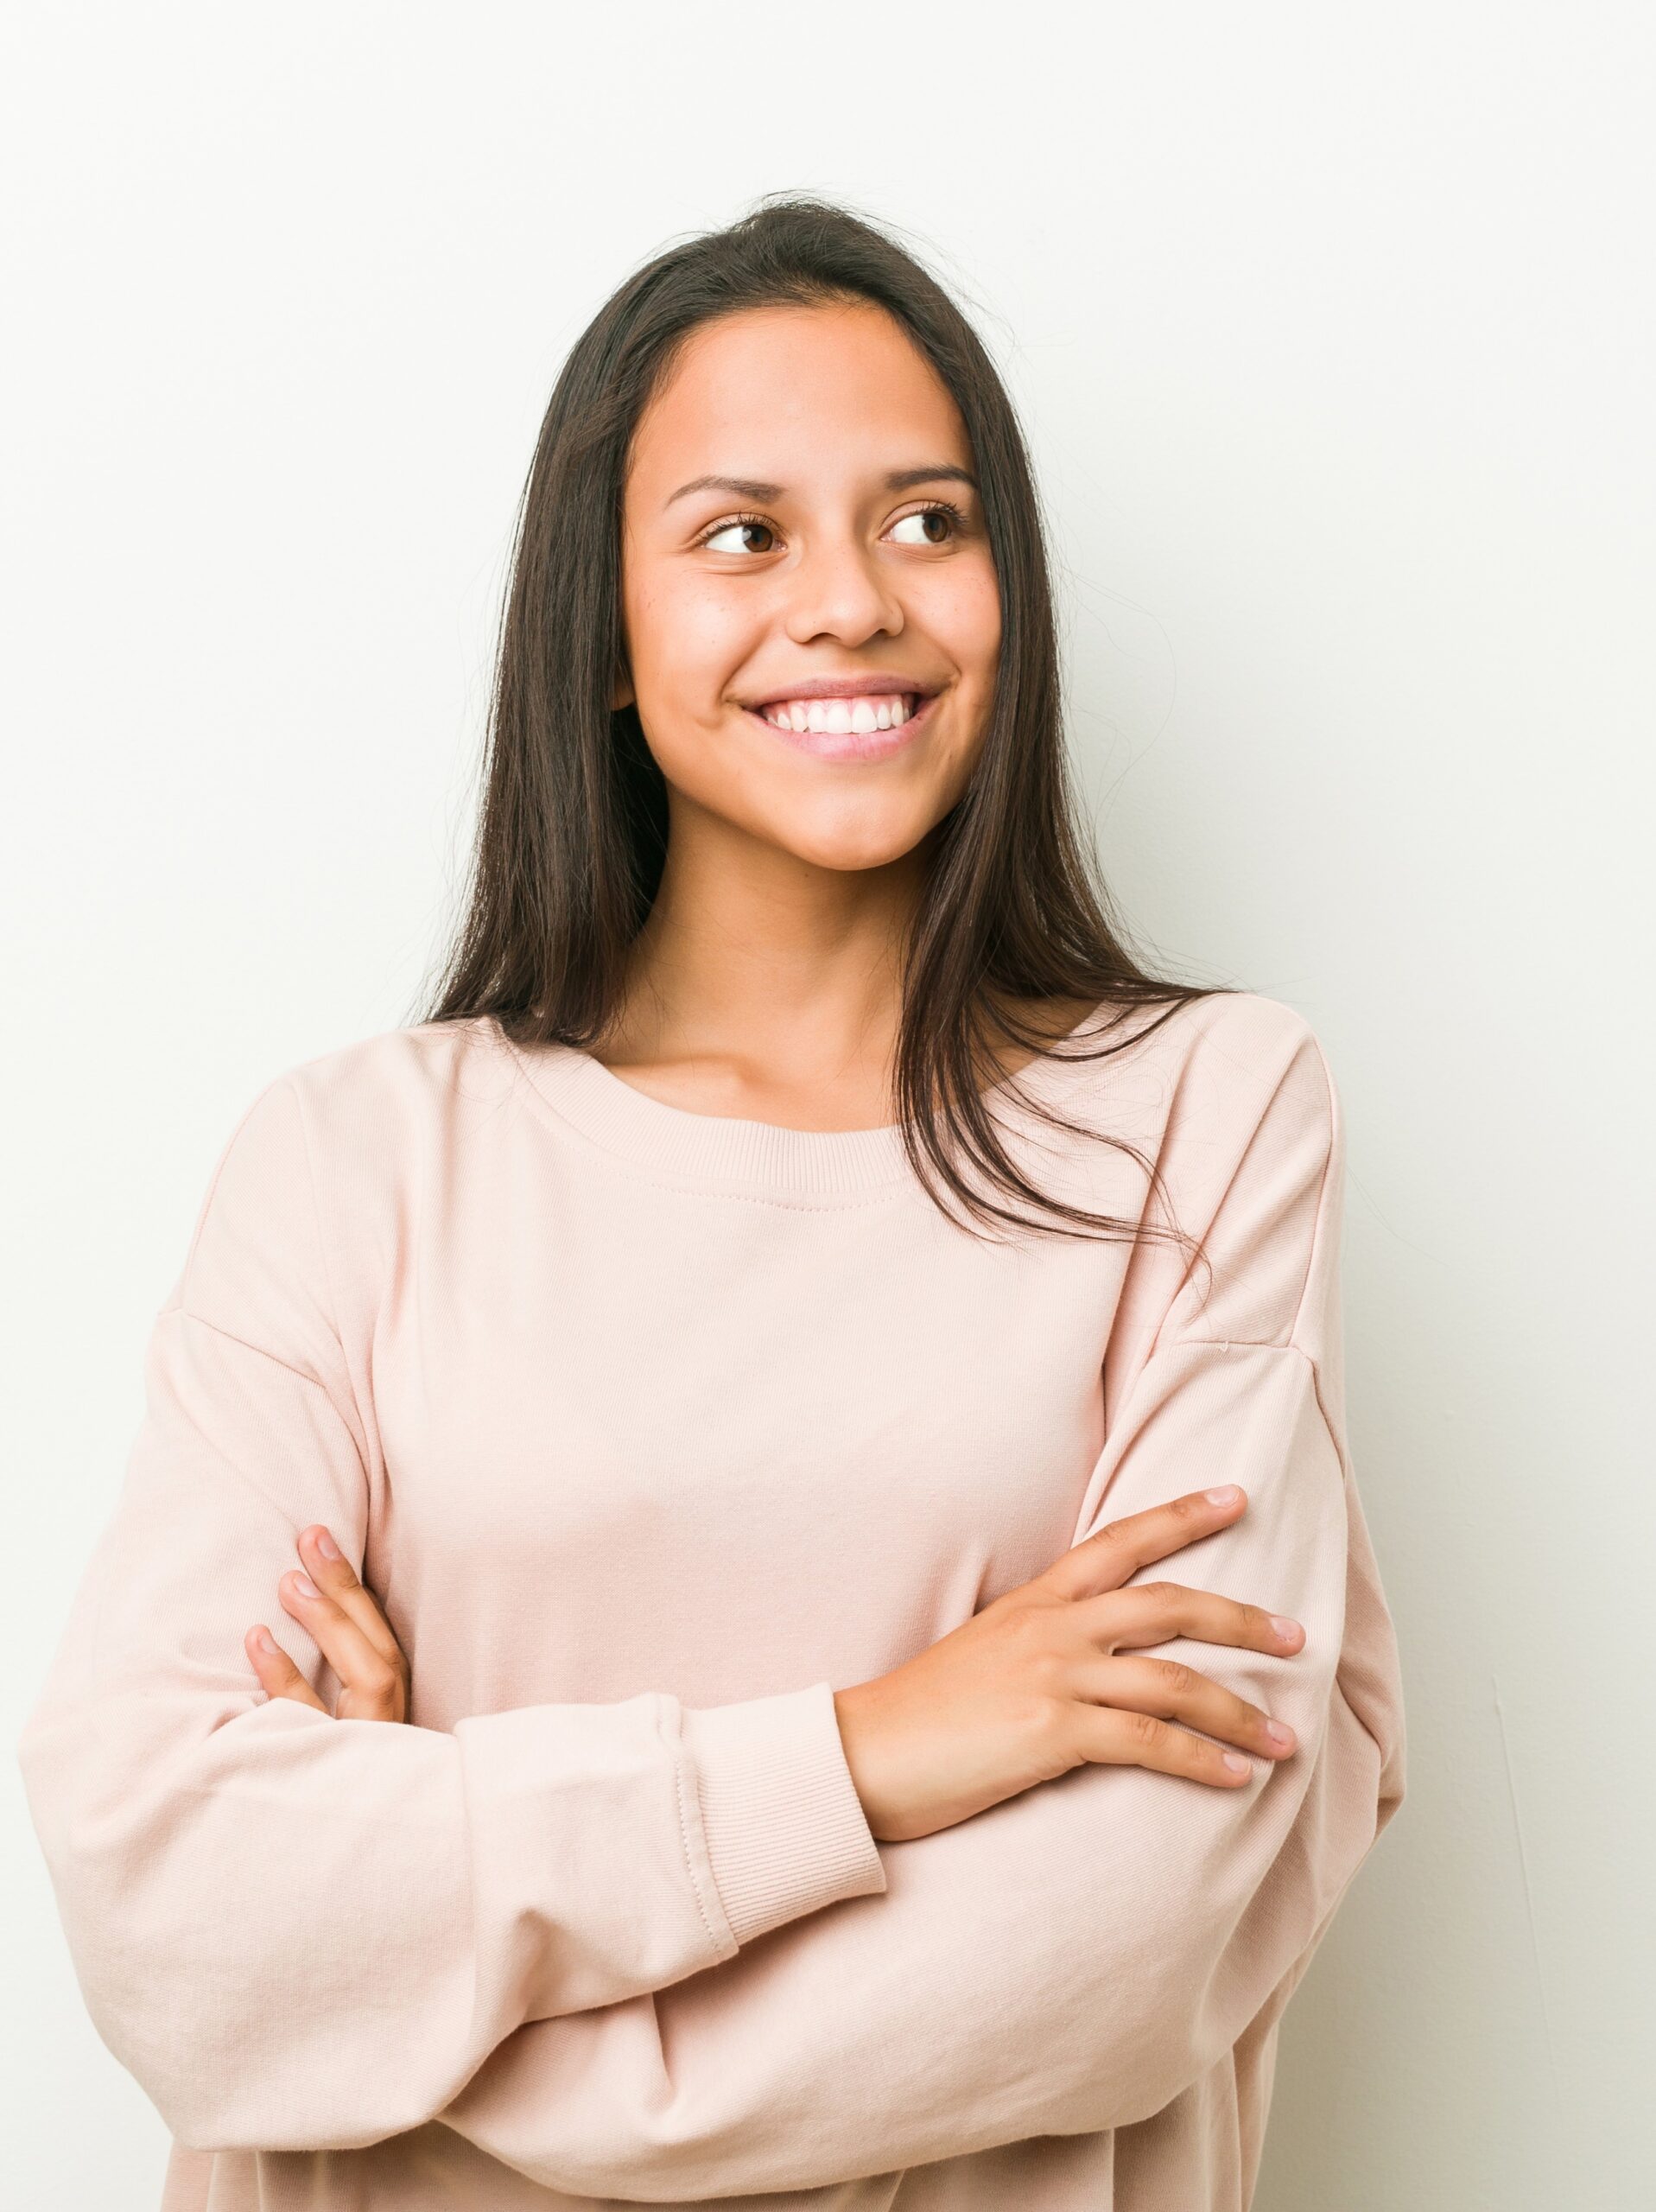 Mujer joven sonriendo segura de sí misma con los brazos cruzados mirando las preguntas frecuentes sobre LASIK